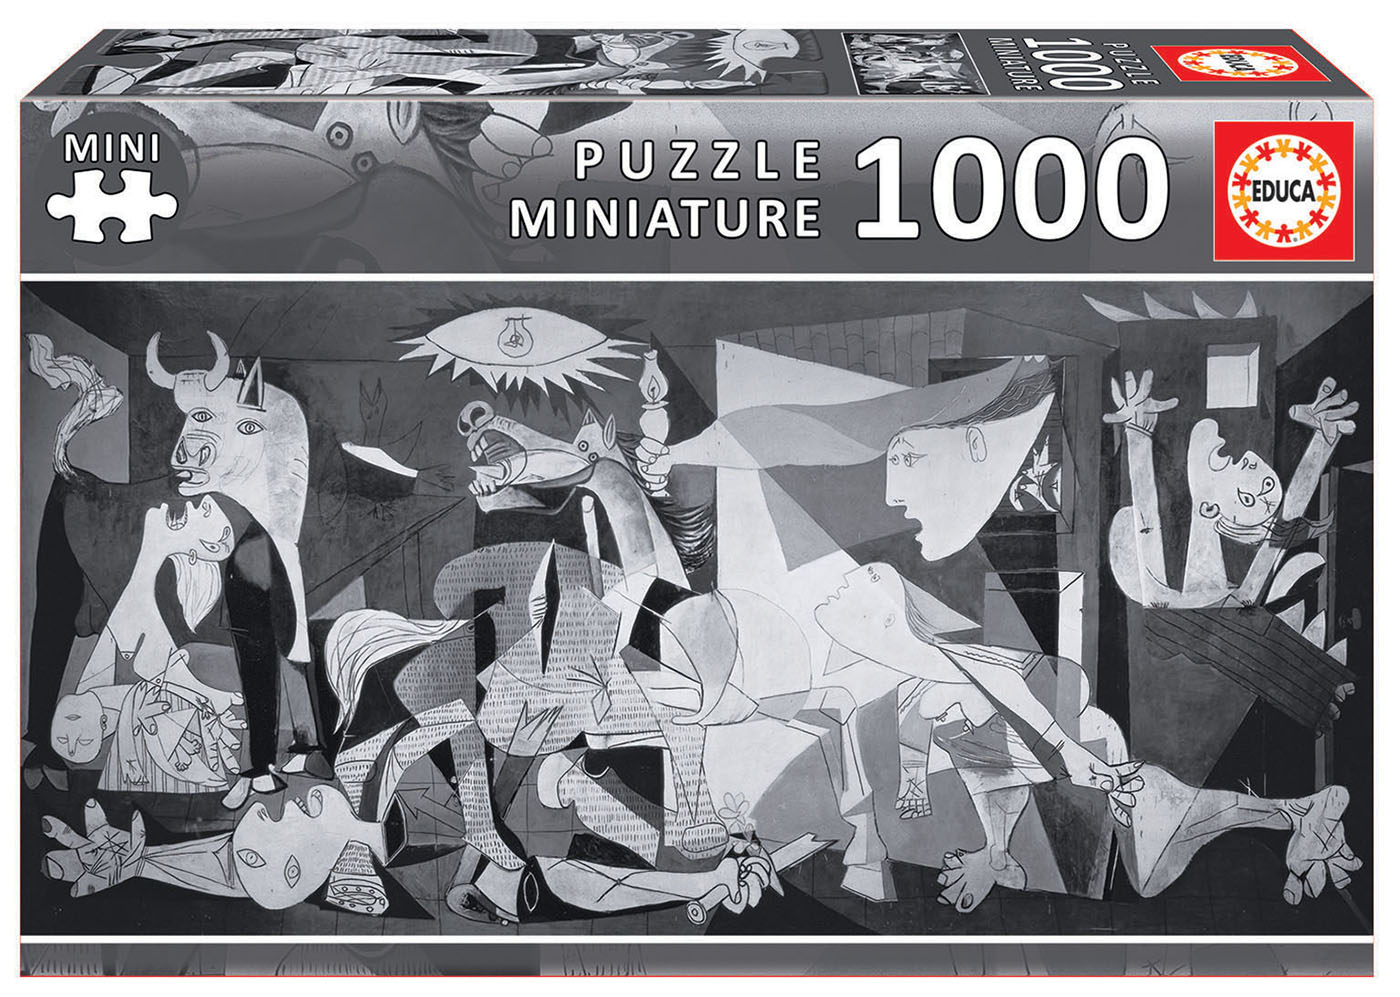 1000 Guernica, P. Picasso “Miniature”